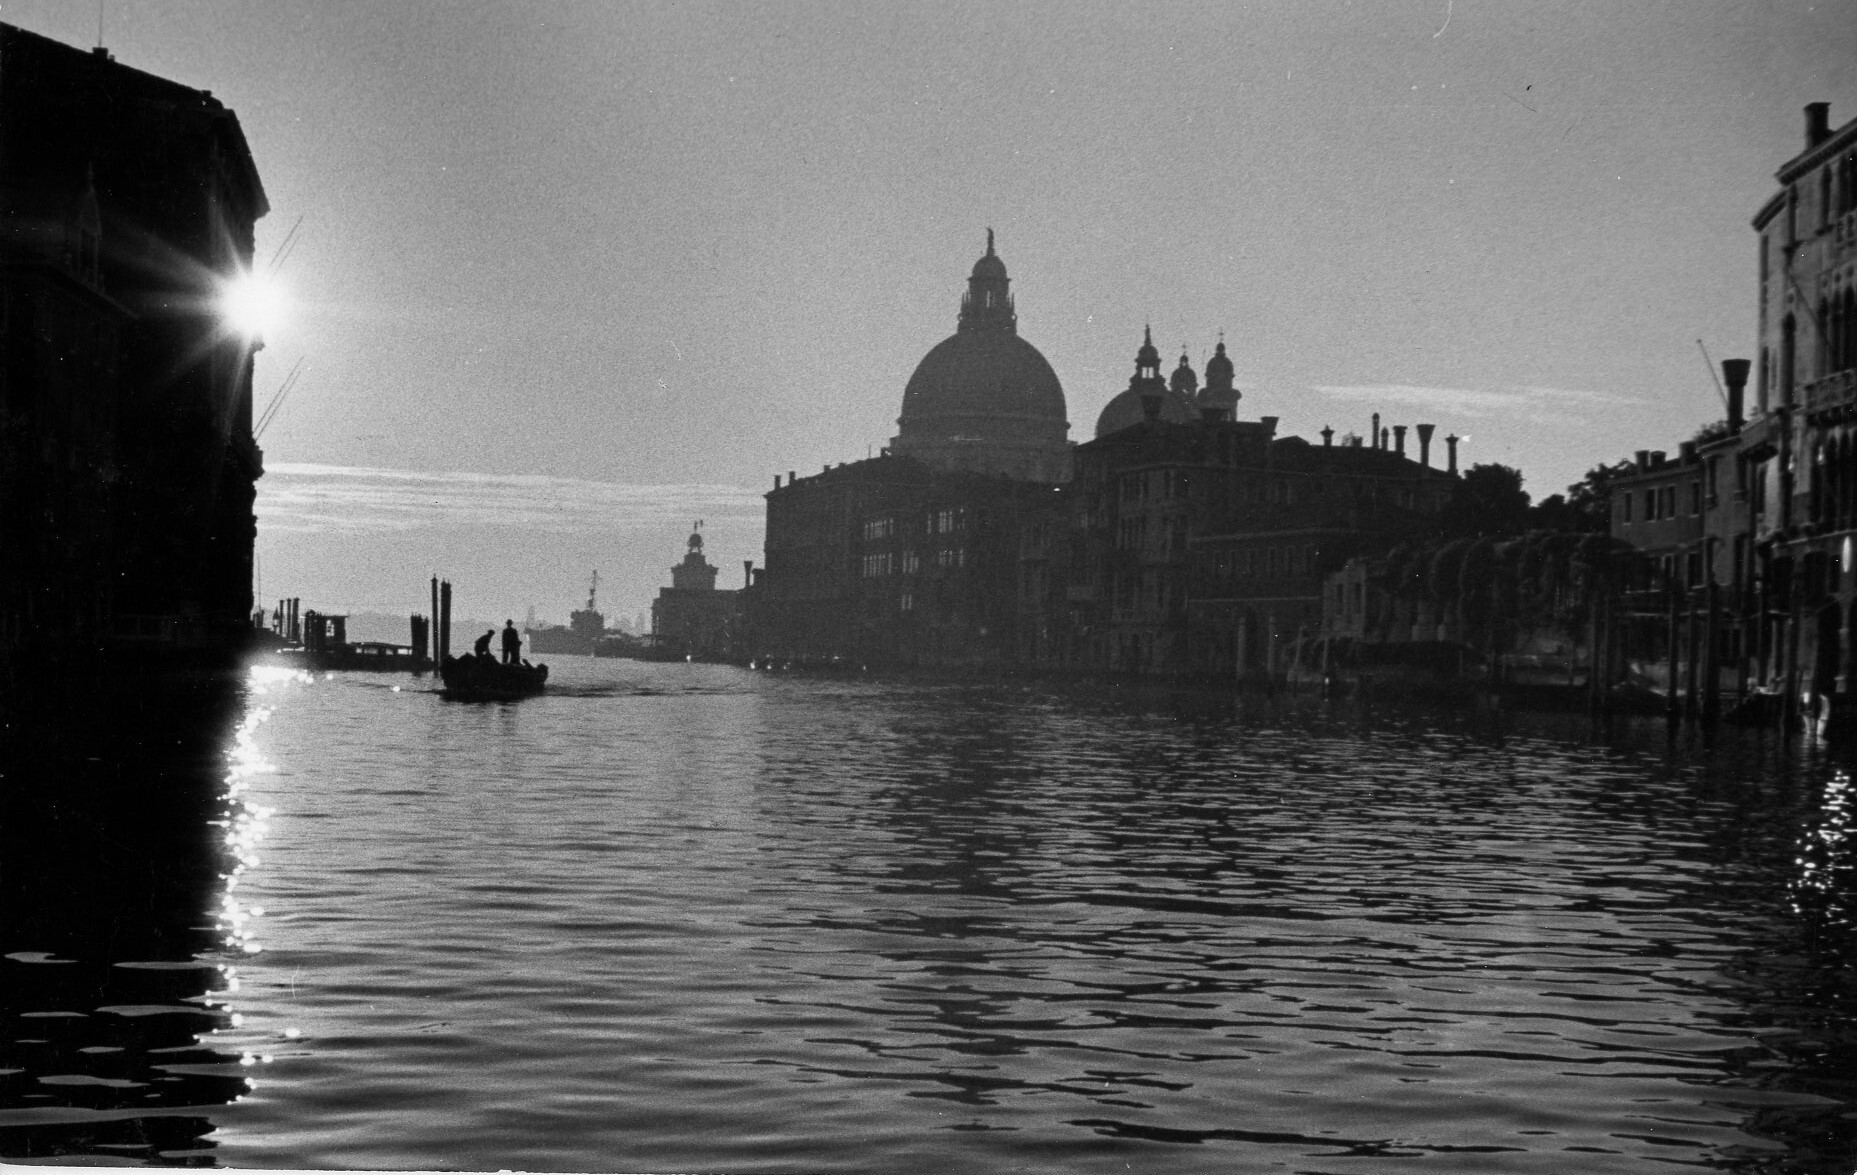 Гранд-канал, 7 утра, Венеция, Италия, 1951 год. Фотограф Рут Оркин